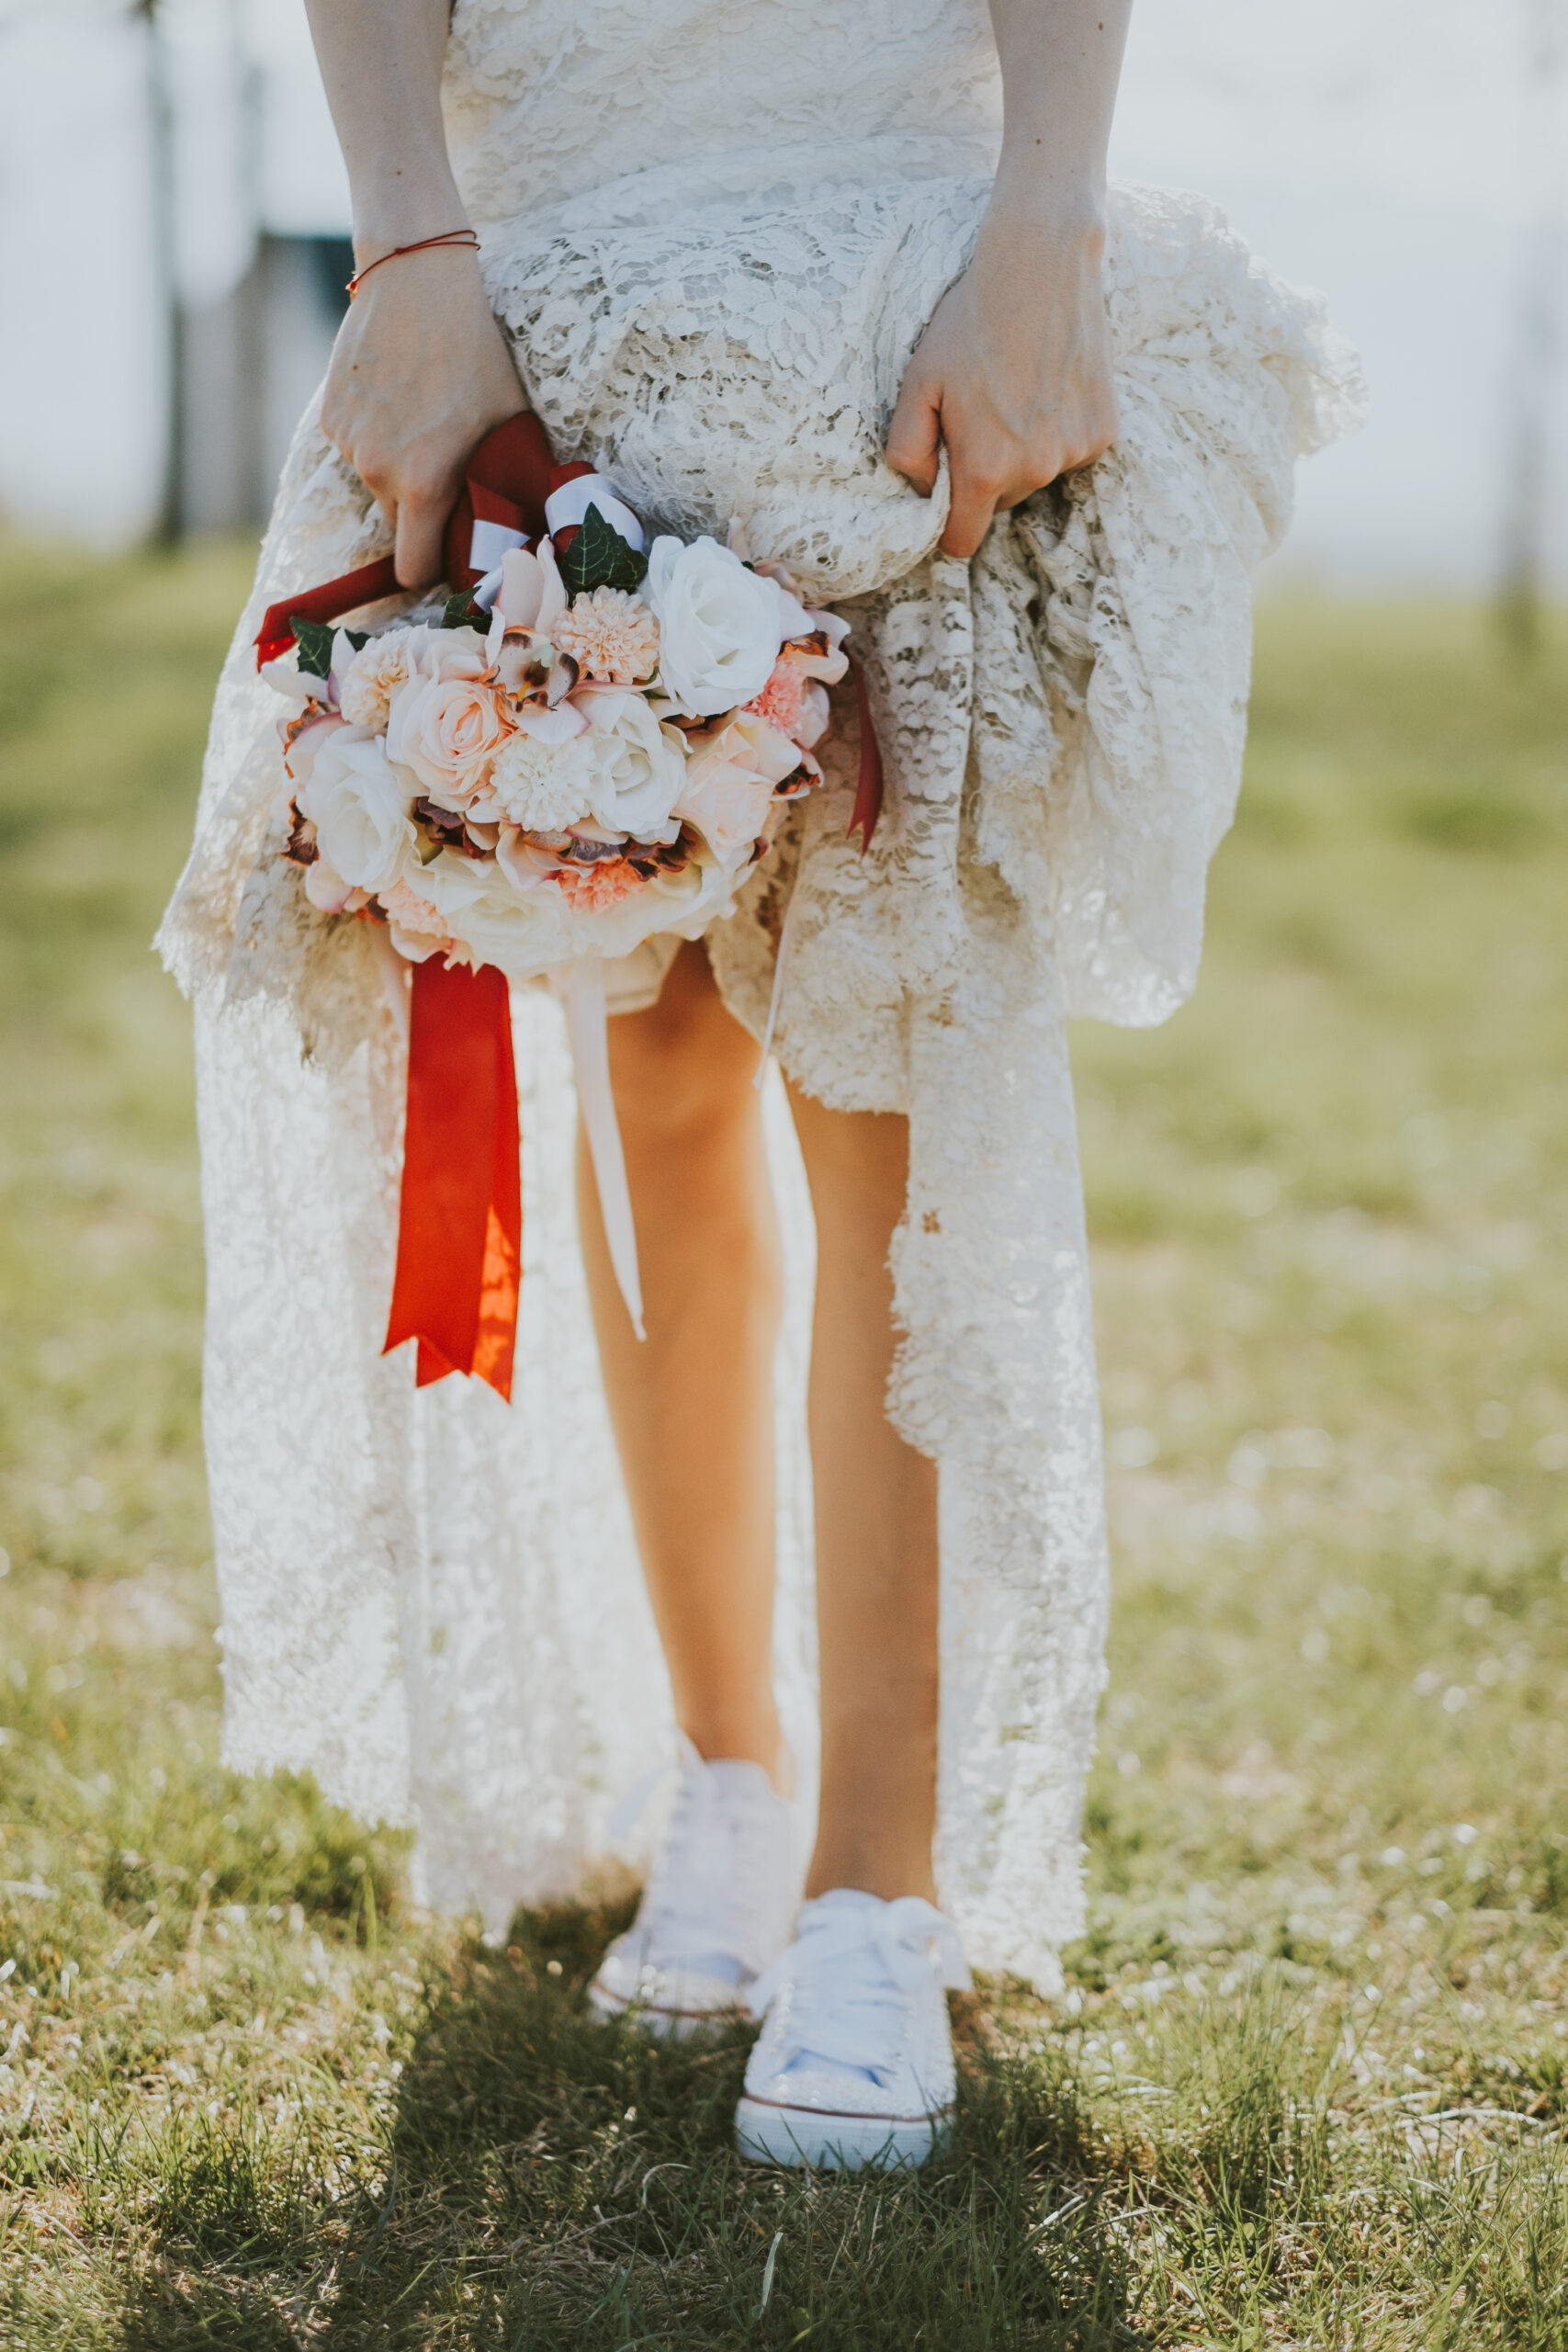 Γυναίκα με boho νυφικό με λουλούδια στο χέρι και χαμηλά λευκά sneakers στα πόδια